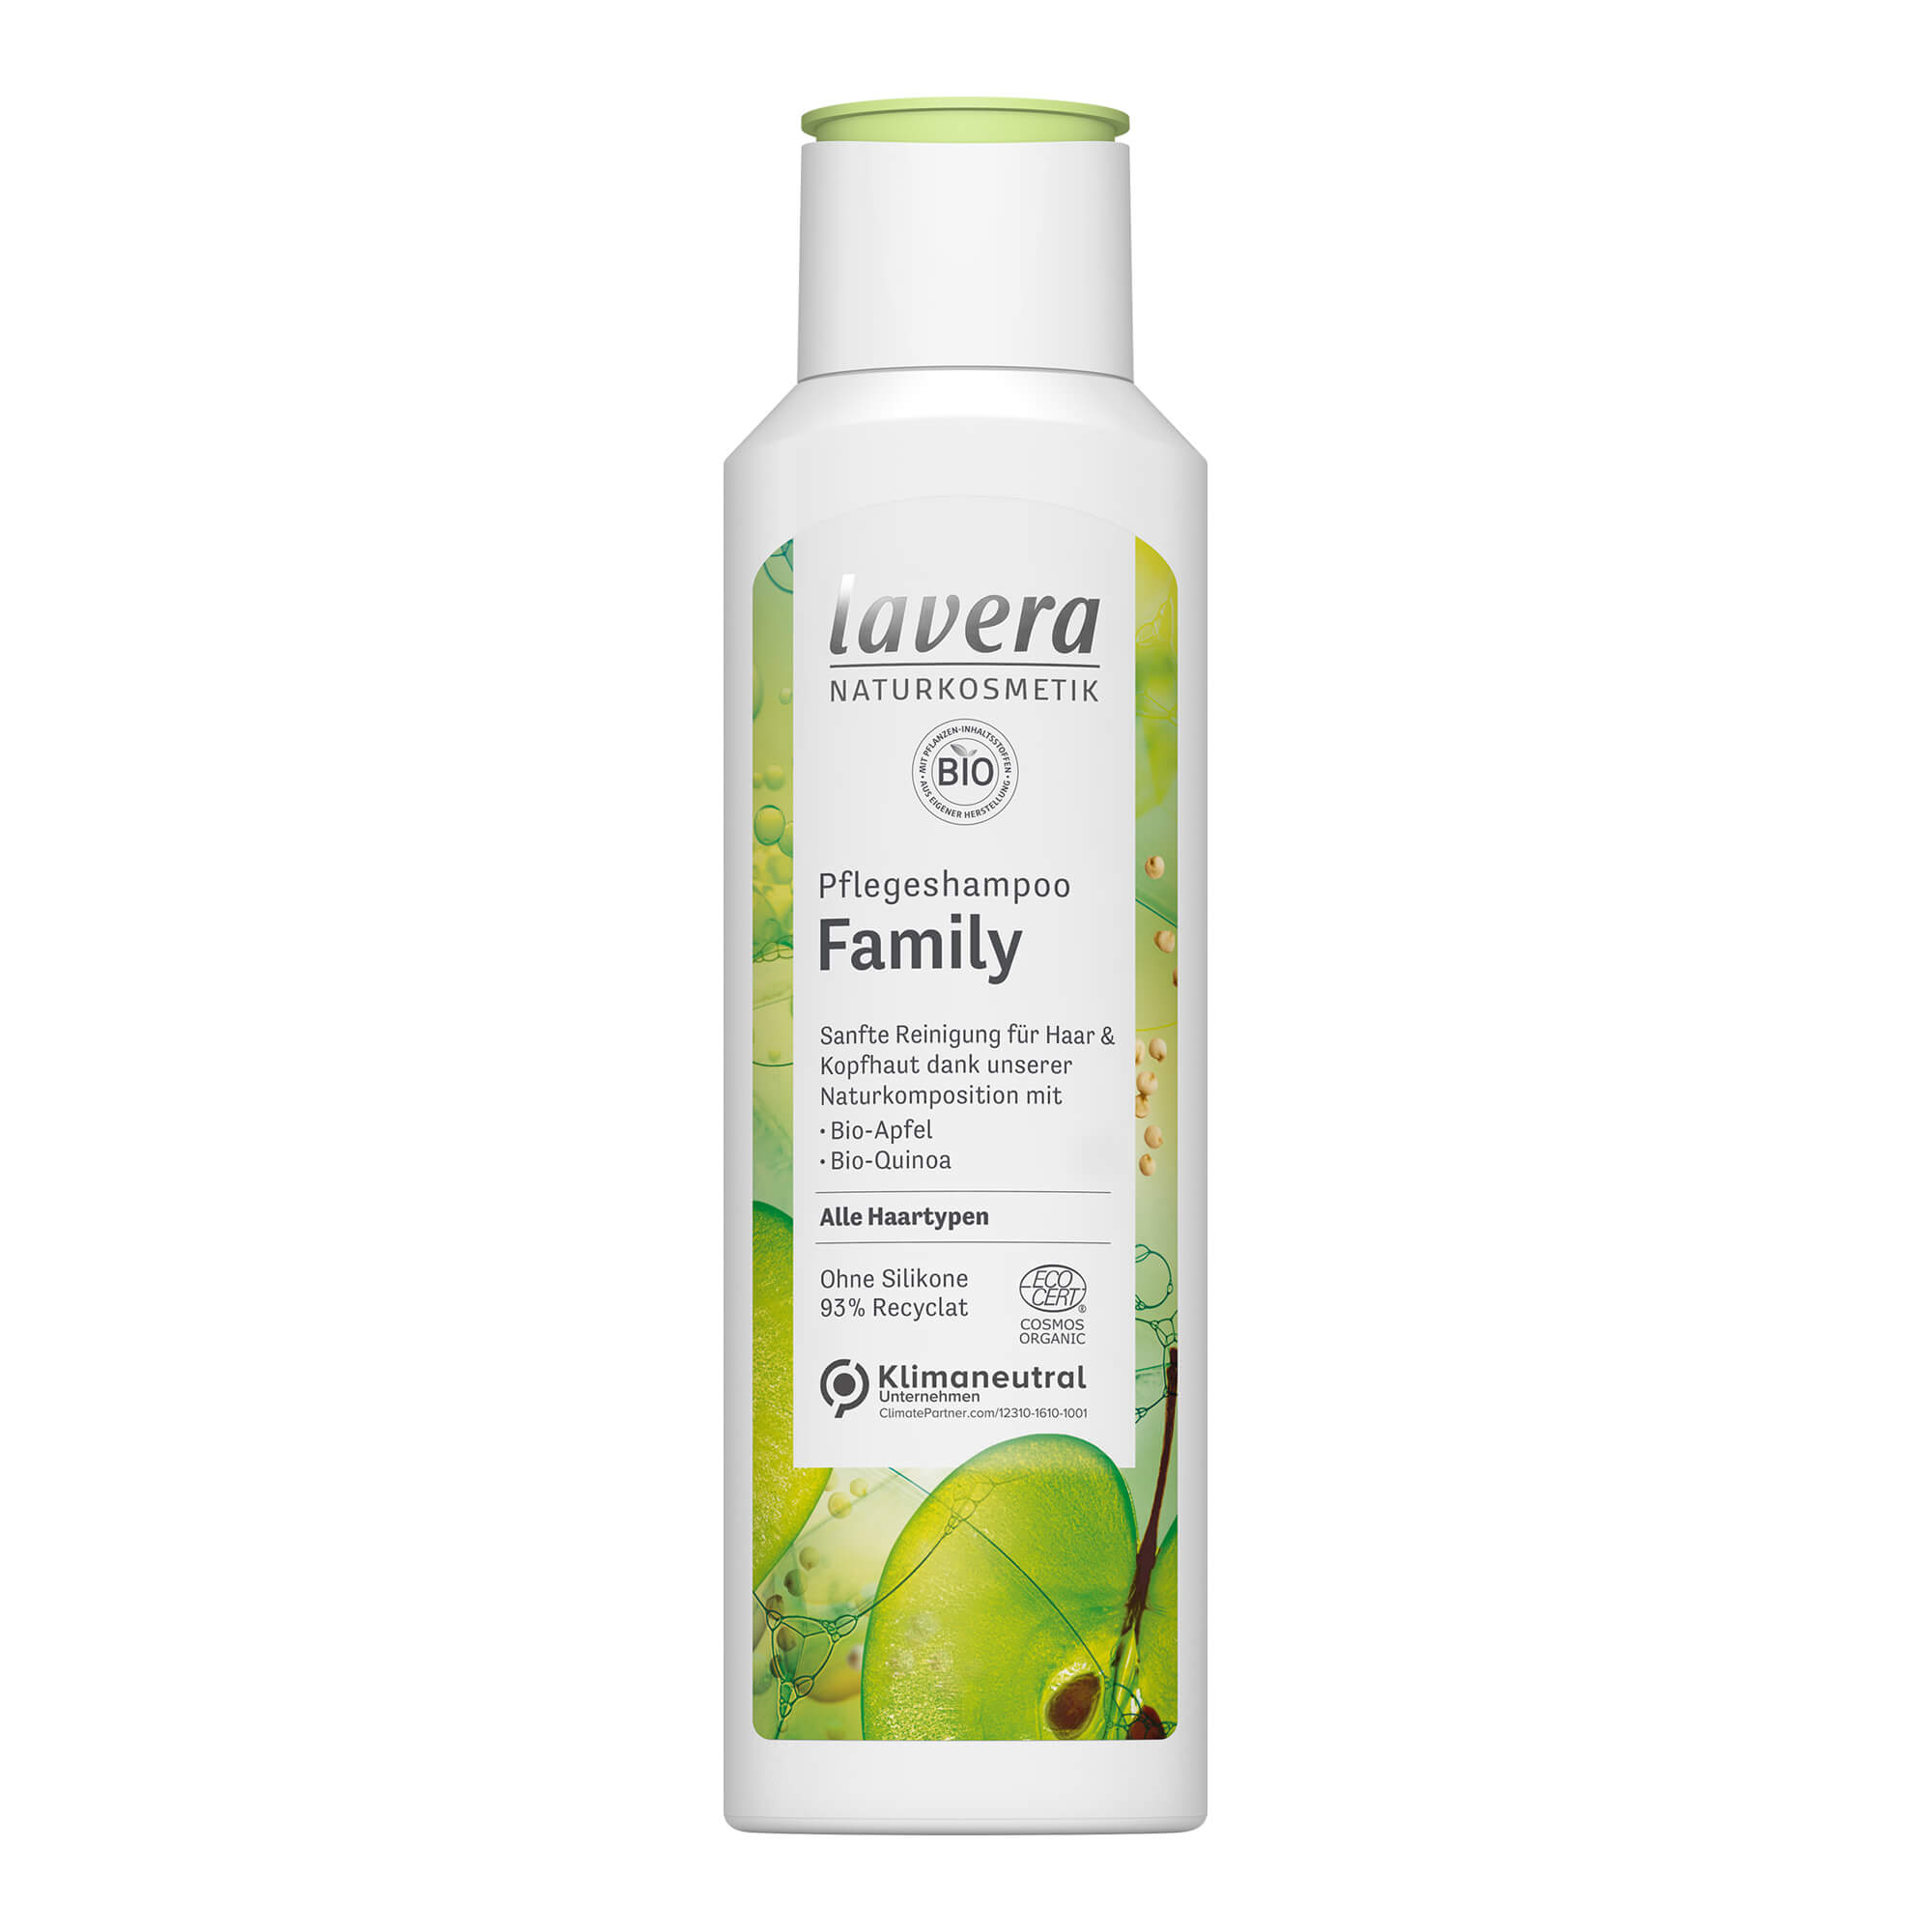 Sanfte Reinigung für Haar & Kopfhaut dank der einzigartigen lavera Naturkomposition mit Bio-Apfel und Bio-Quinoa. Für die tägliche Haarwäsche Ihrer ganzen Familie.